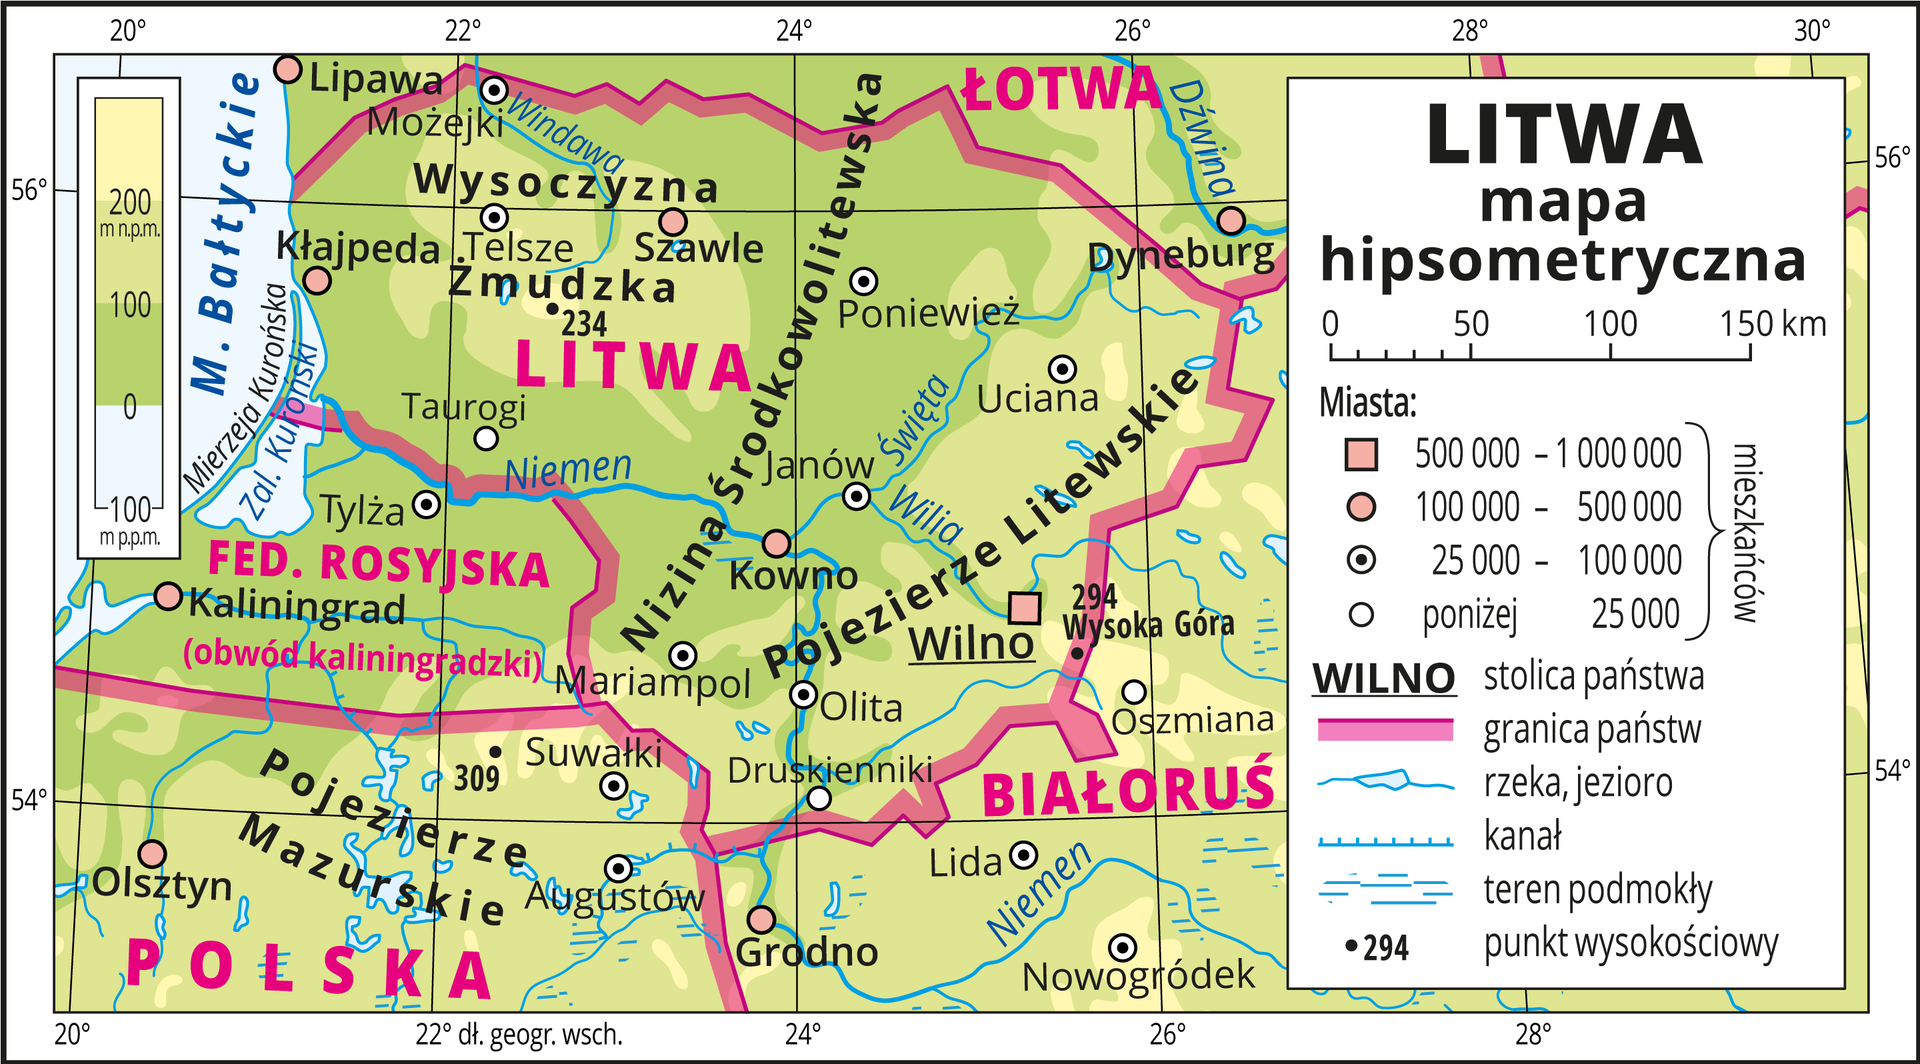 Ilustracja przedstawia mapę hipsometryczną Litwy. W obrębie lądów występują obszary w kolorze zielonym i żółtym. W lewym górnym rogu mapy fragment Morza Bałtyckiego zaznaczono kolorem niebieskim i opisano. Na mapie opisano nazwy nizin, pojezierzy i rzek. Oznaczono i opisano główne miasta. Oznaczono czarnymi kropkami i opisano punkty wysokościowe. Różową wstążką przedstawiono granice państw. Kolorem czerwonym opisano państwa sąsiadujące z Litwą. Mapa pokryta jest równoleżnikami i południkami. Dookoła mapy w białej ramce opisano współrzędne geograficzne co dwa stopnie. W legendzie umieszczono i opisano znaki użyte na mapie.